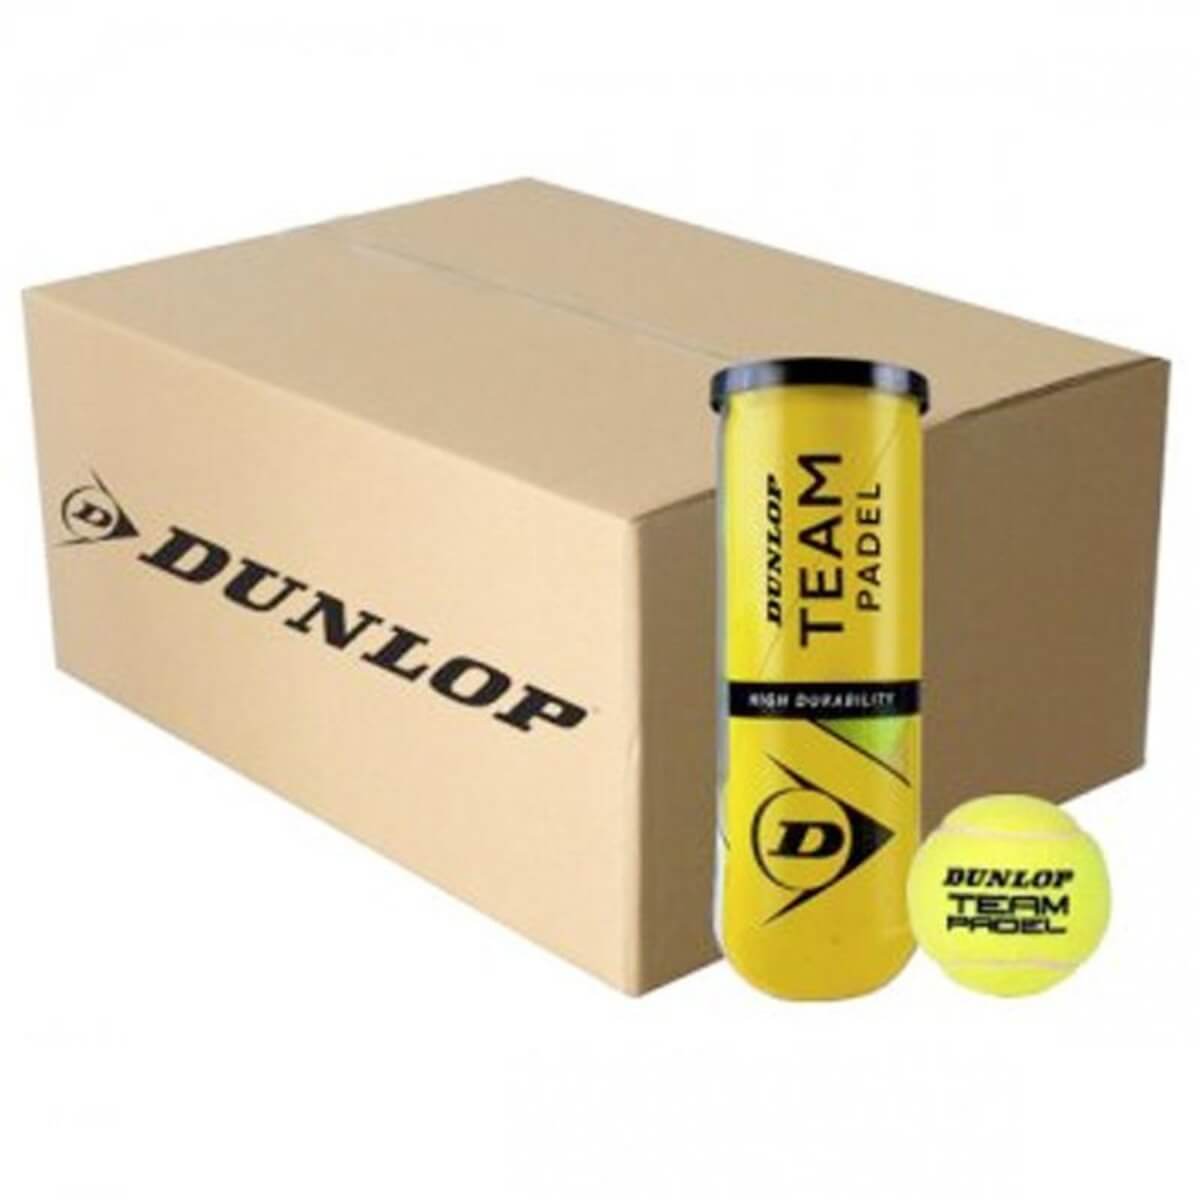 Doos Dunlop Team padel ballen met 24 tubes in